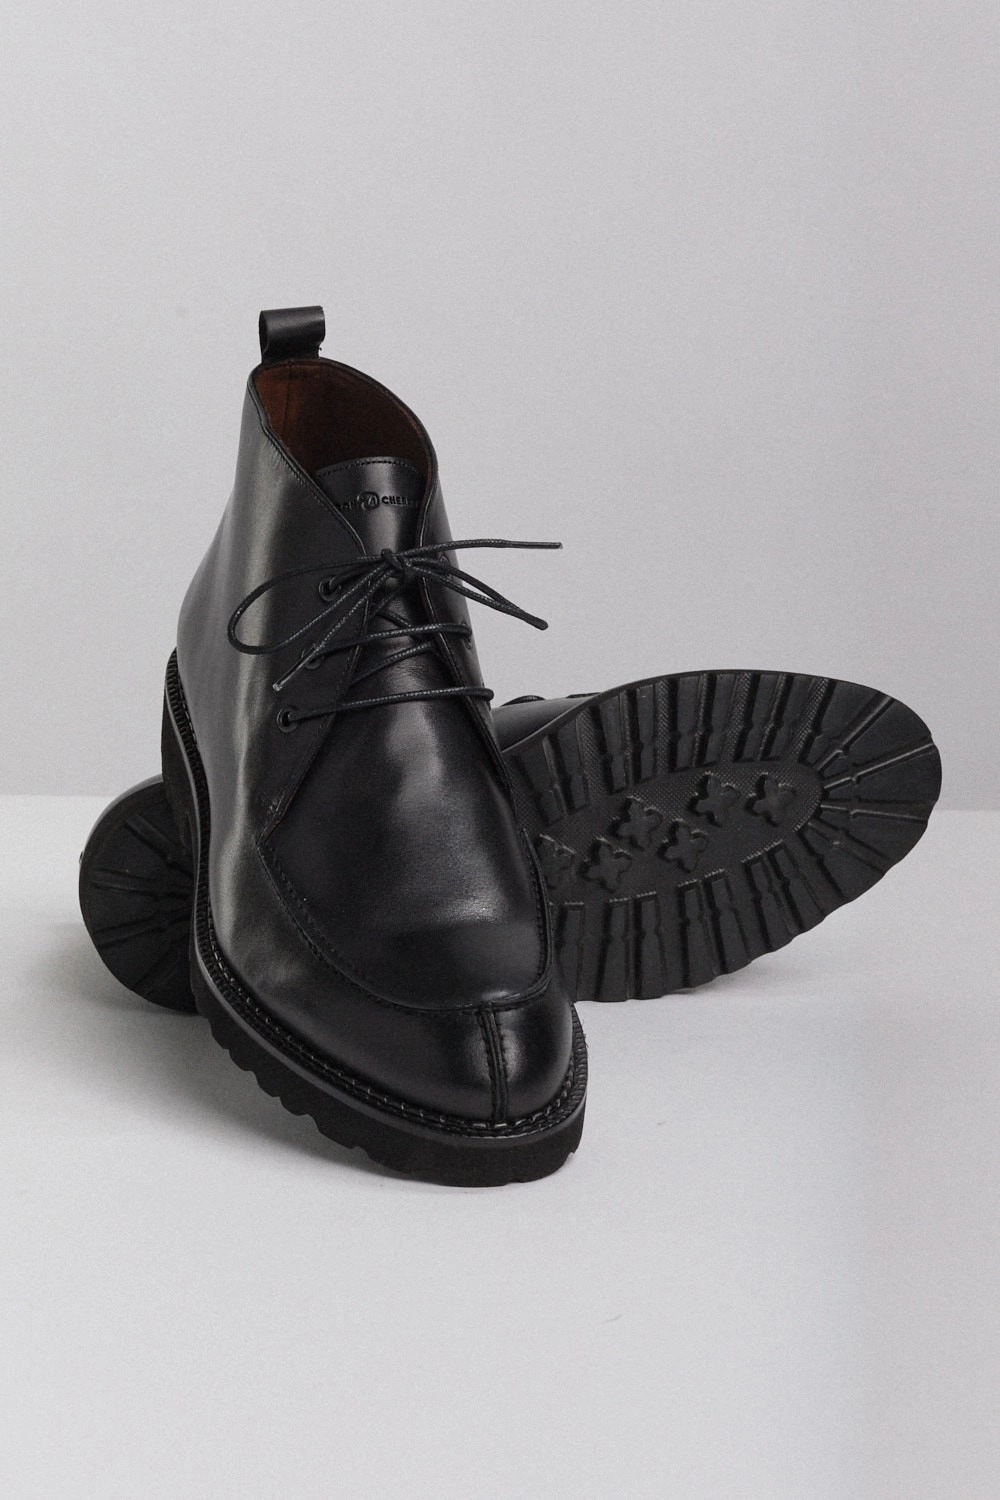 Chaussure en cuir homme- Noir pour 69,000 DT